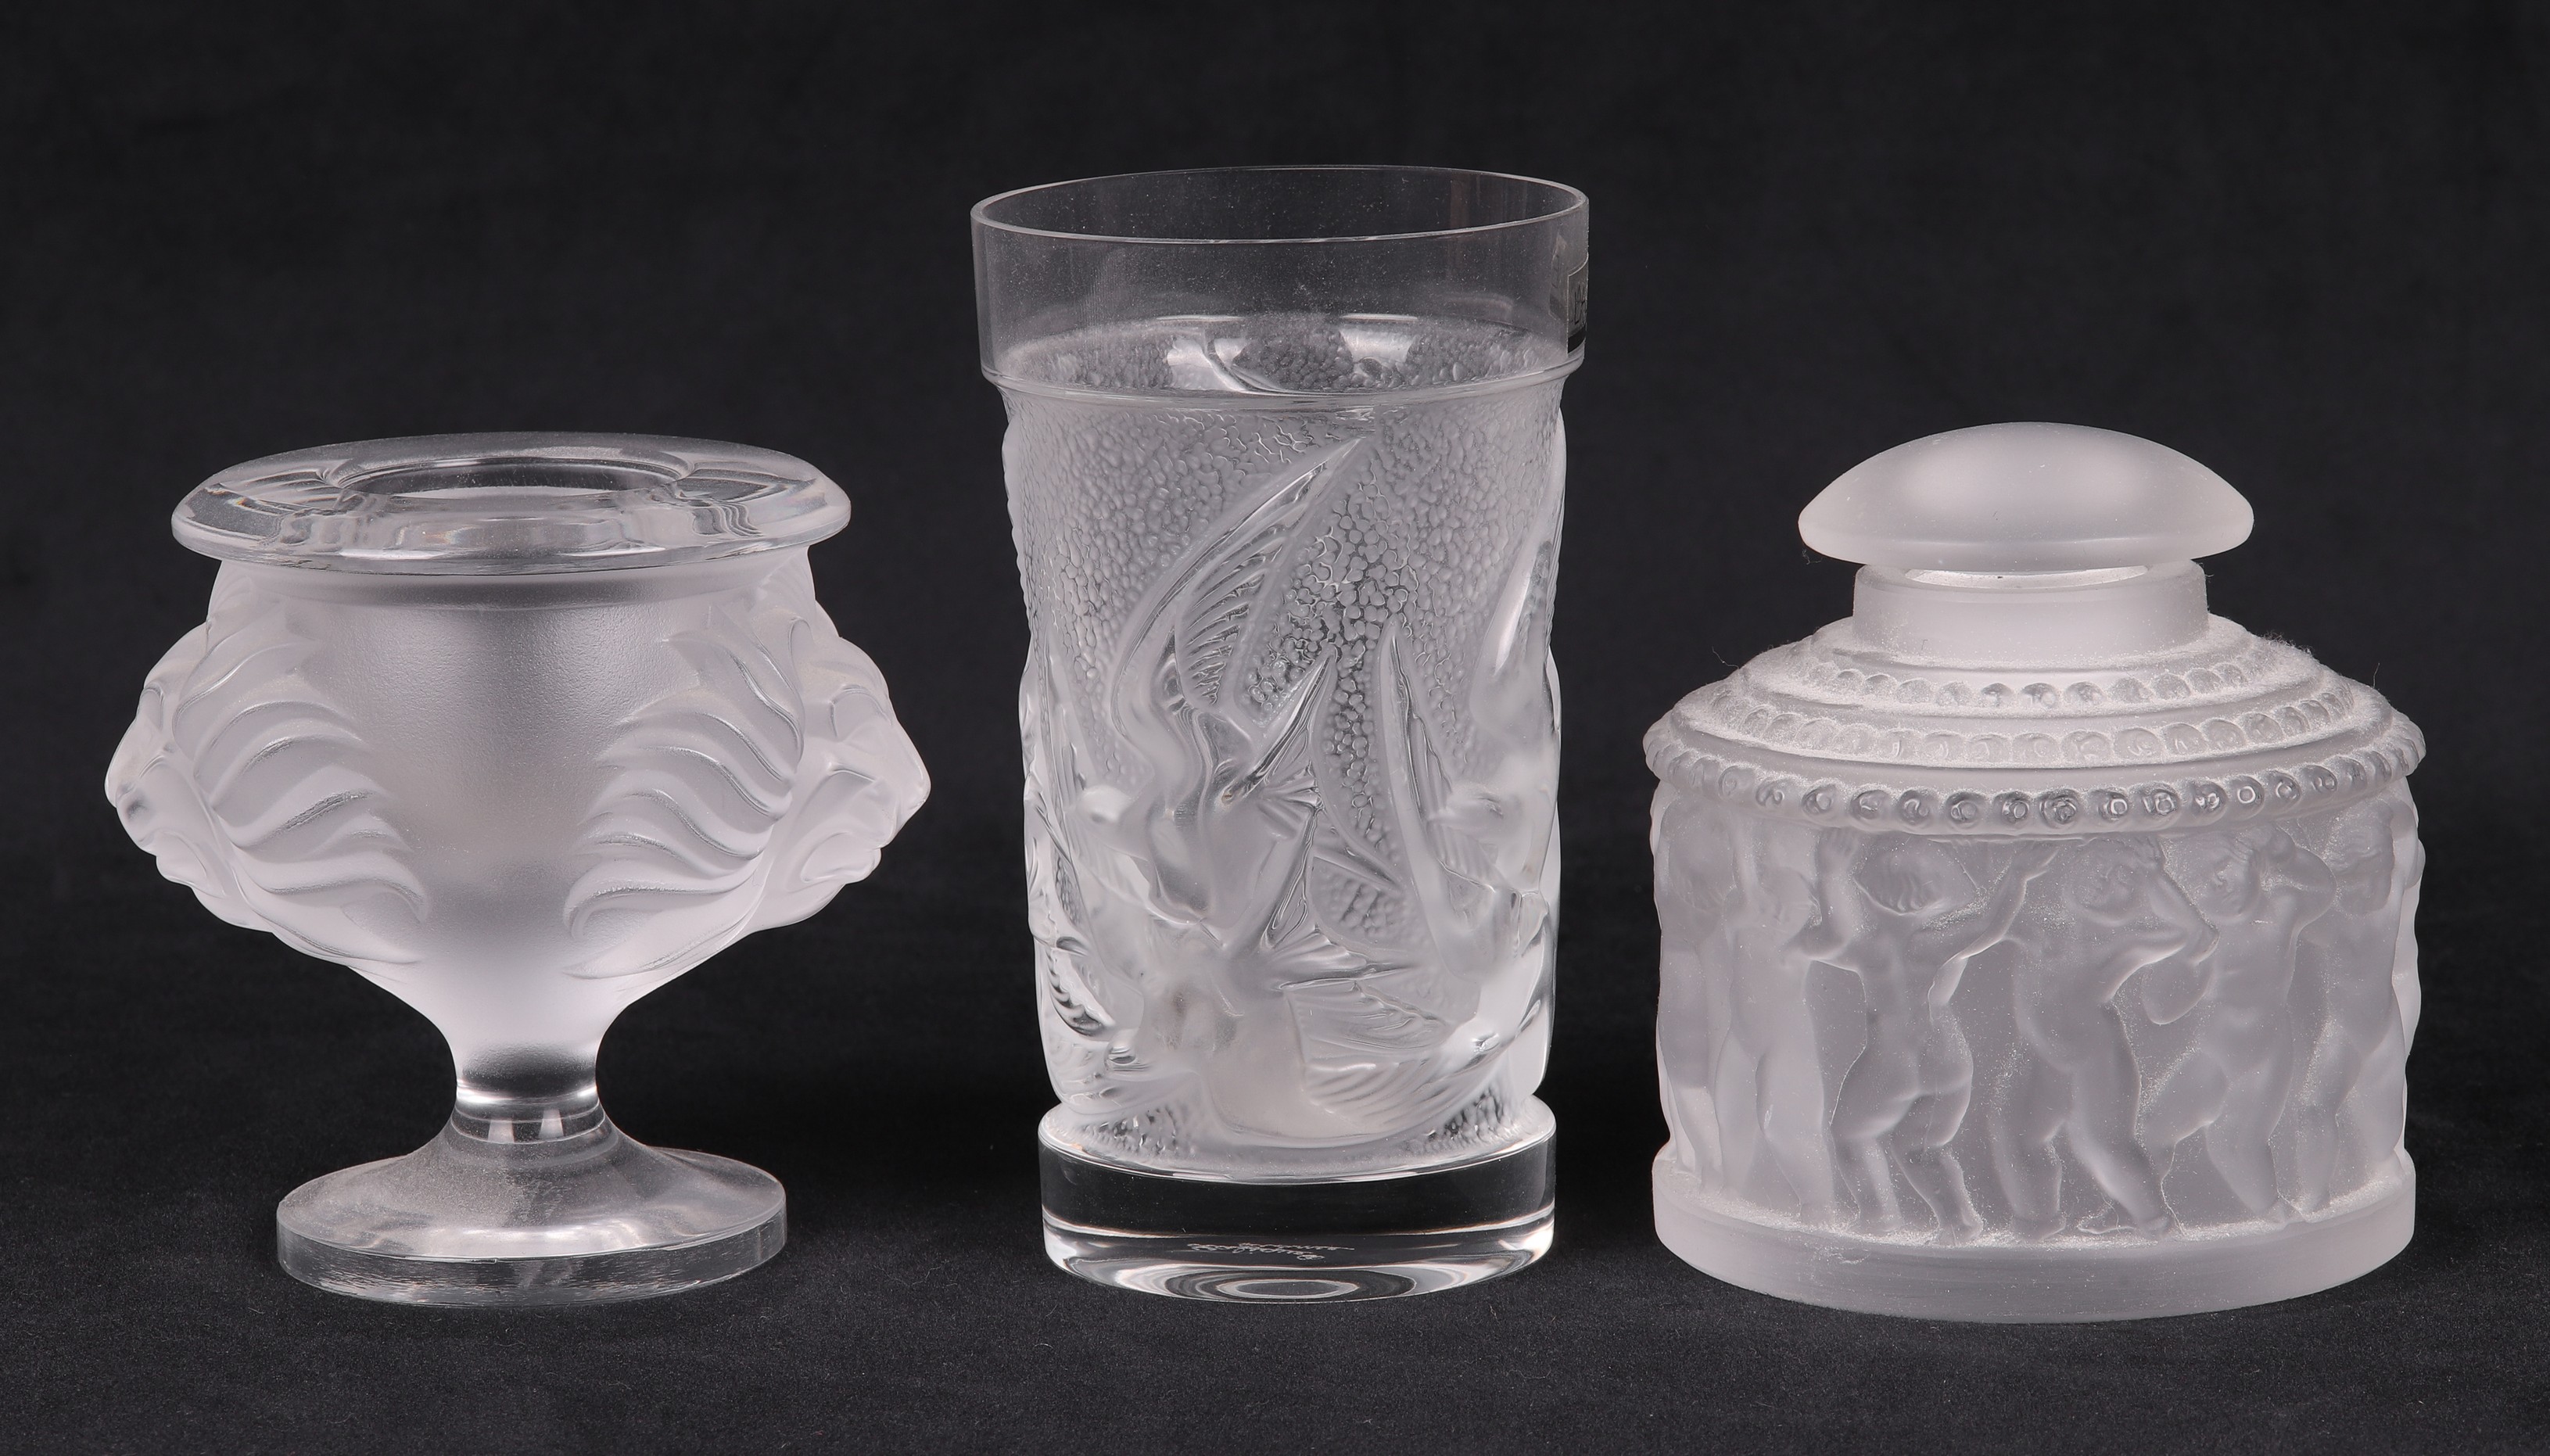  3 Lalique cup vase and scent 2e0e72